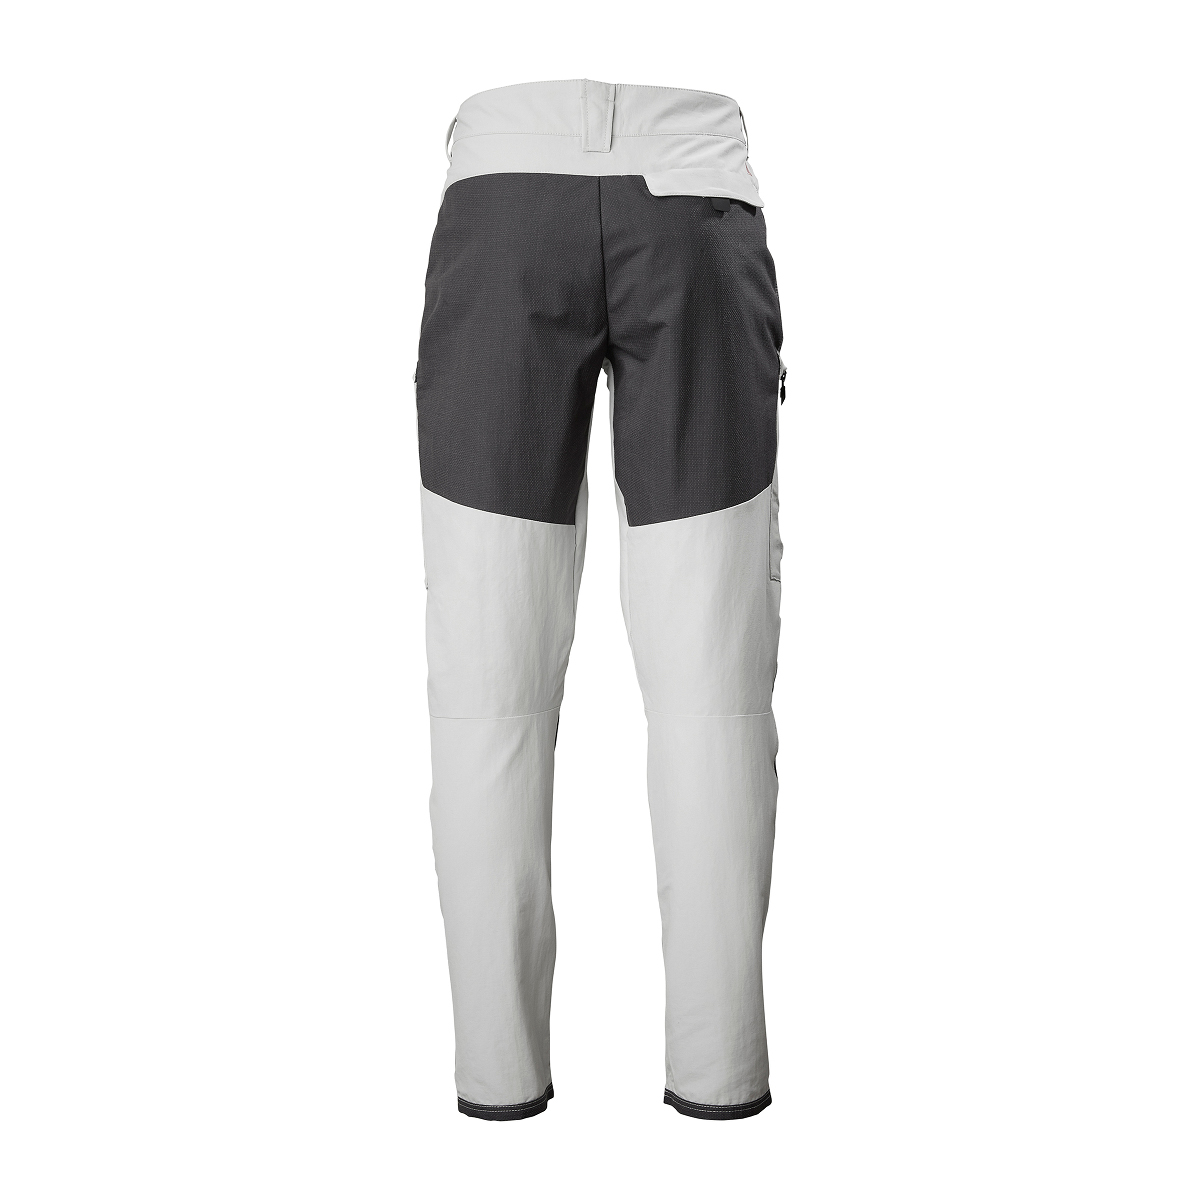 Musto Evolution Performance pantalon de voile 2.0 homme gris clair, taille 36